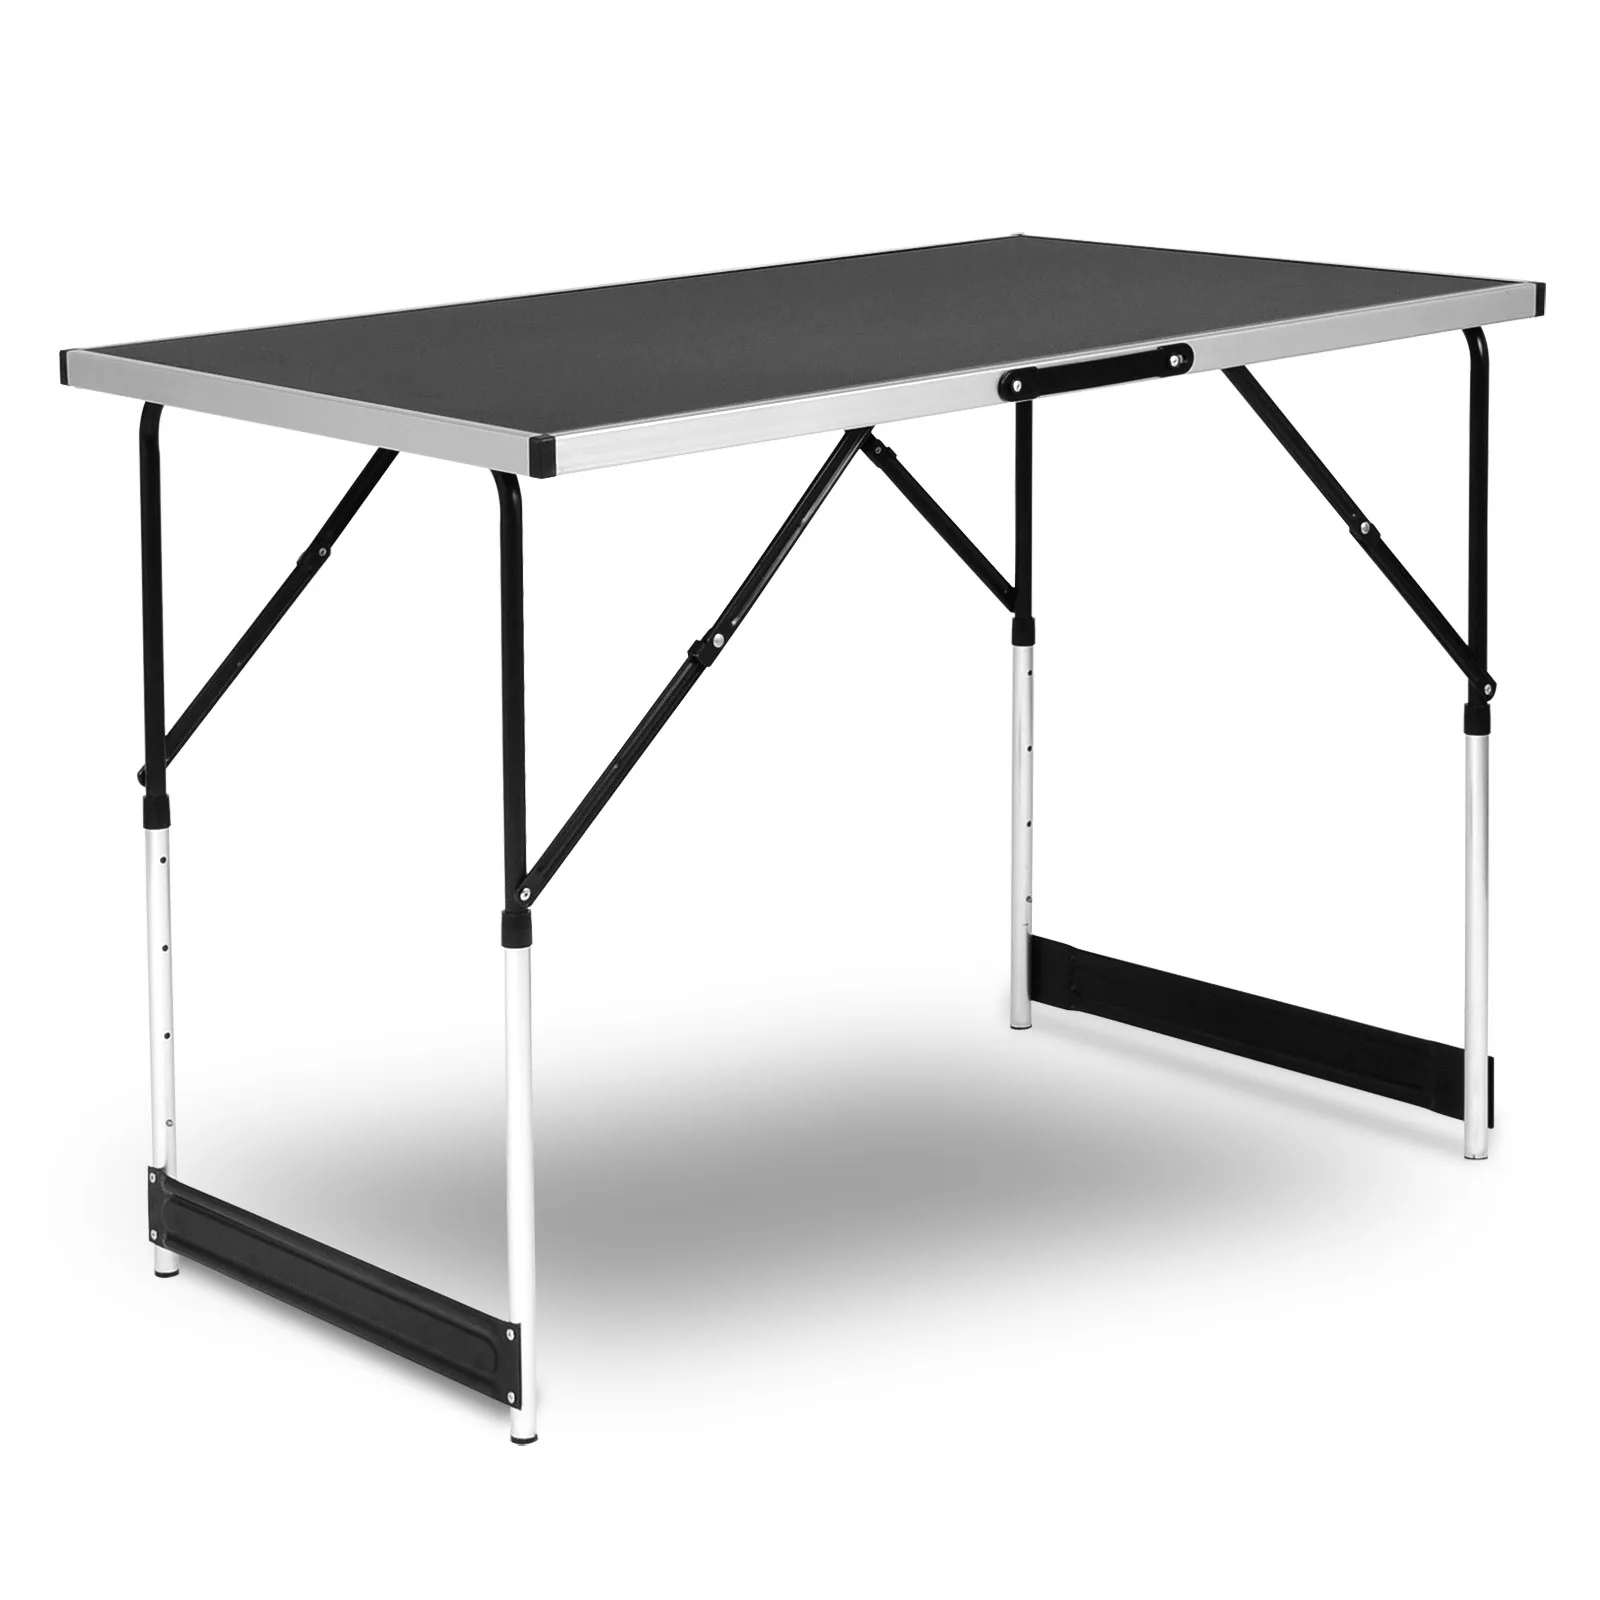 Tanie WOLTU stal aluminiowa składany stół kempingowy składany odkryty obiad biurko